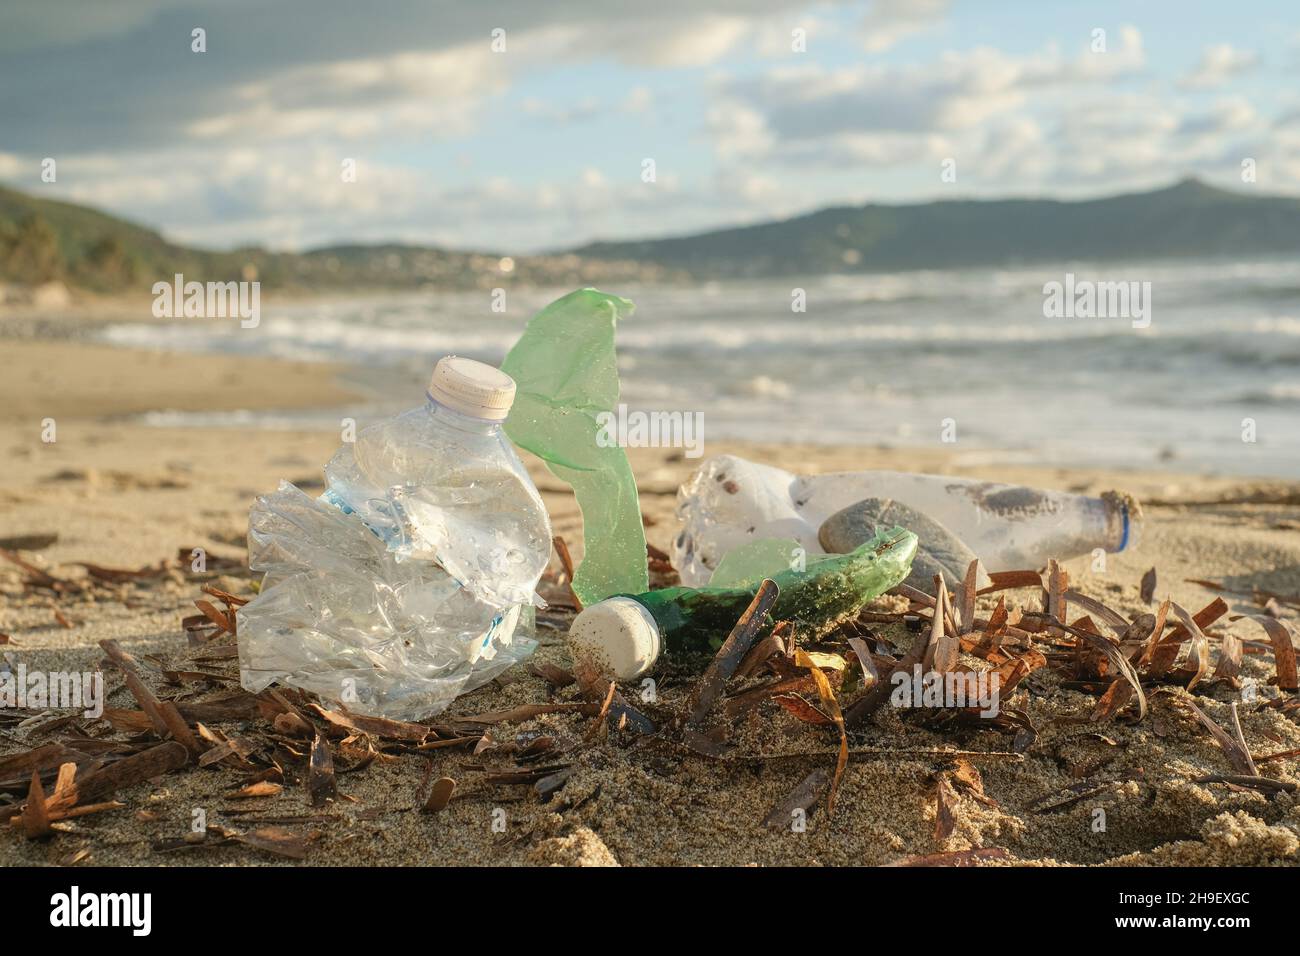 Botellas de plástico desechadas en contaminación hábitat de costa de mar oceánica contaminada, desechos de naturaleza ambiental Foto de stock